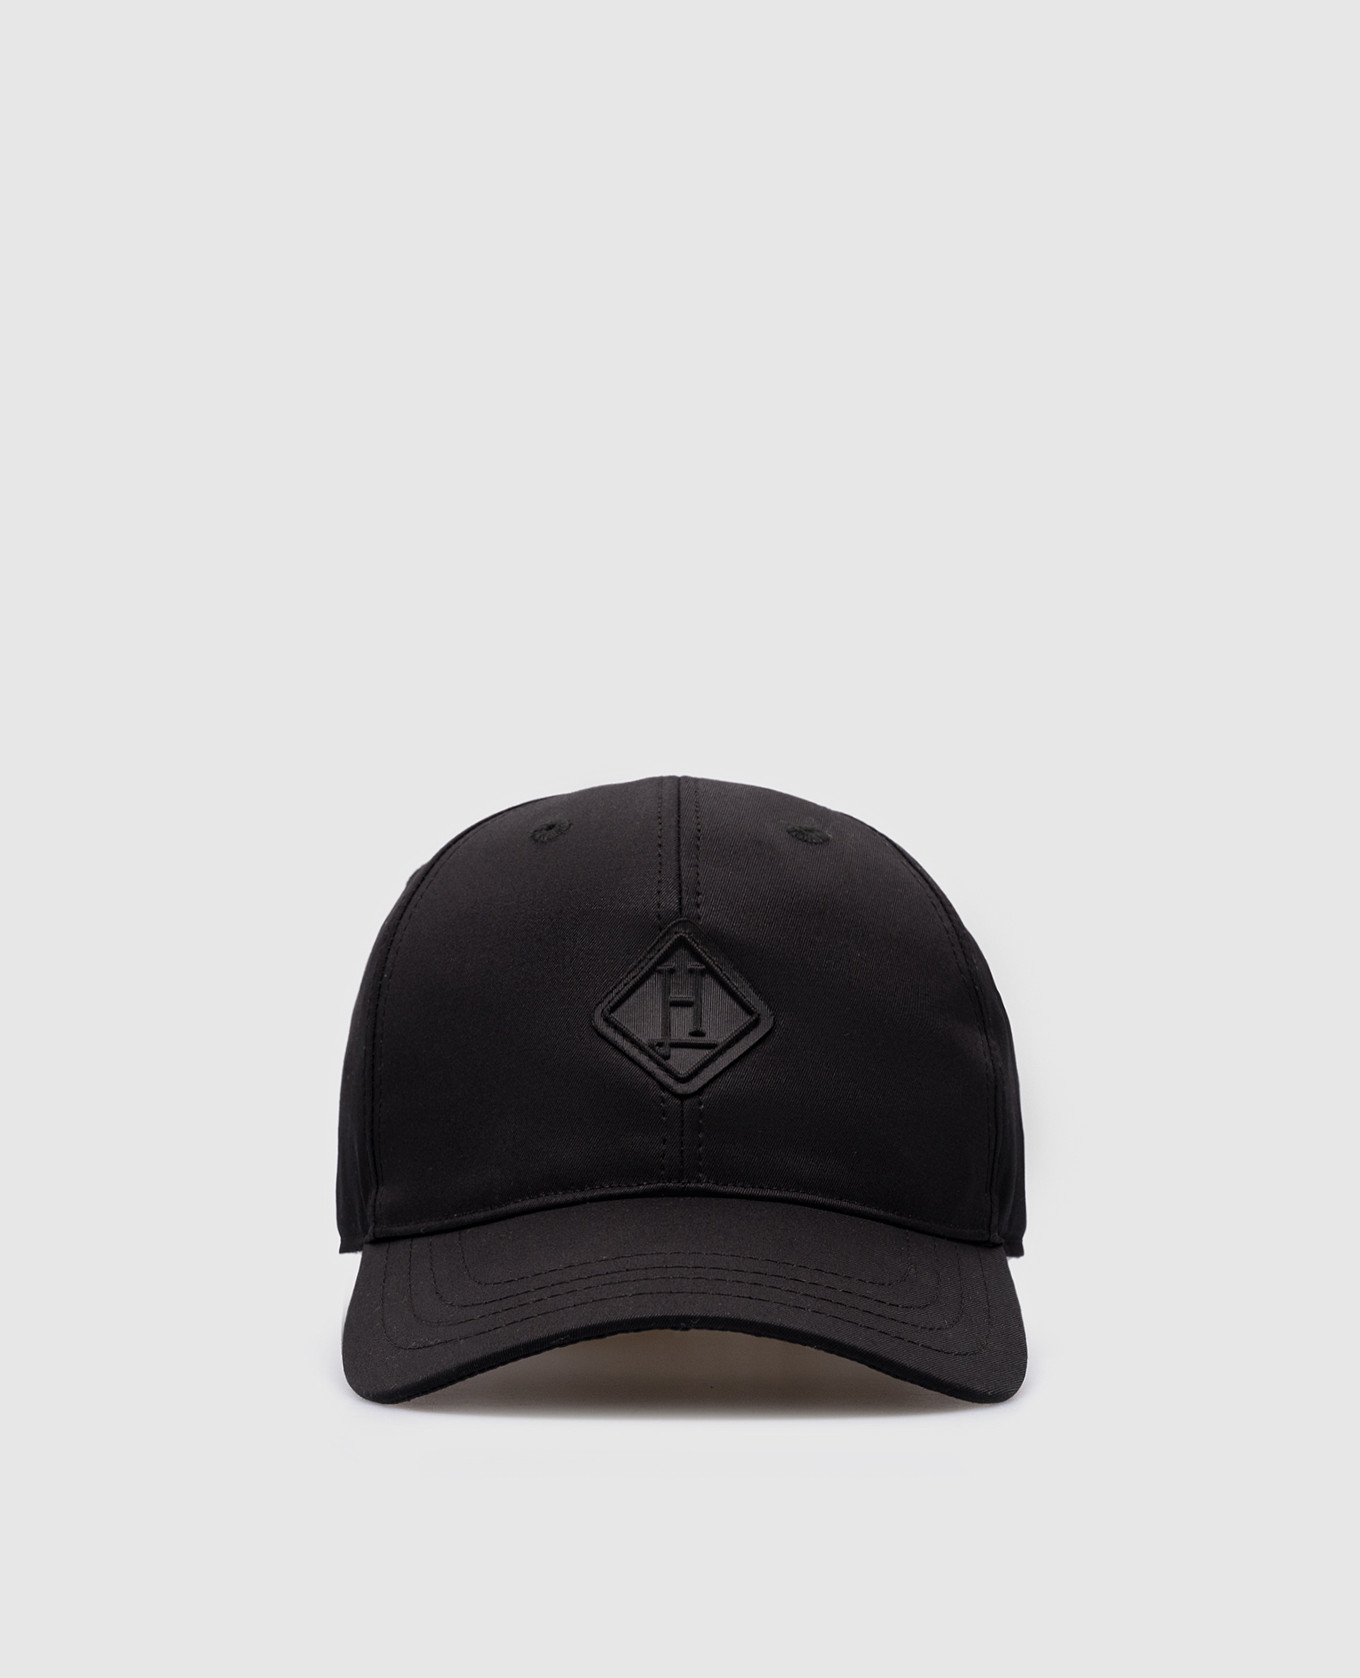 Gorra negra con logo.